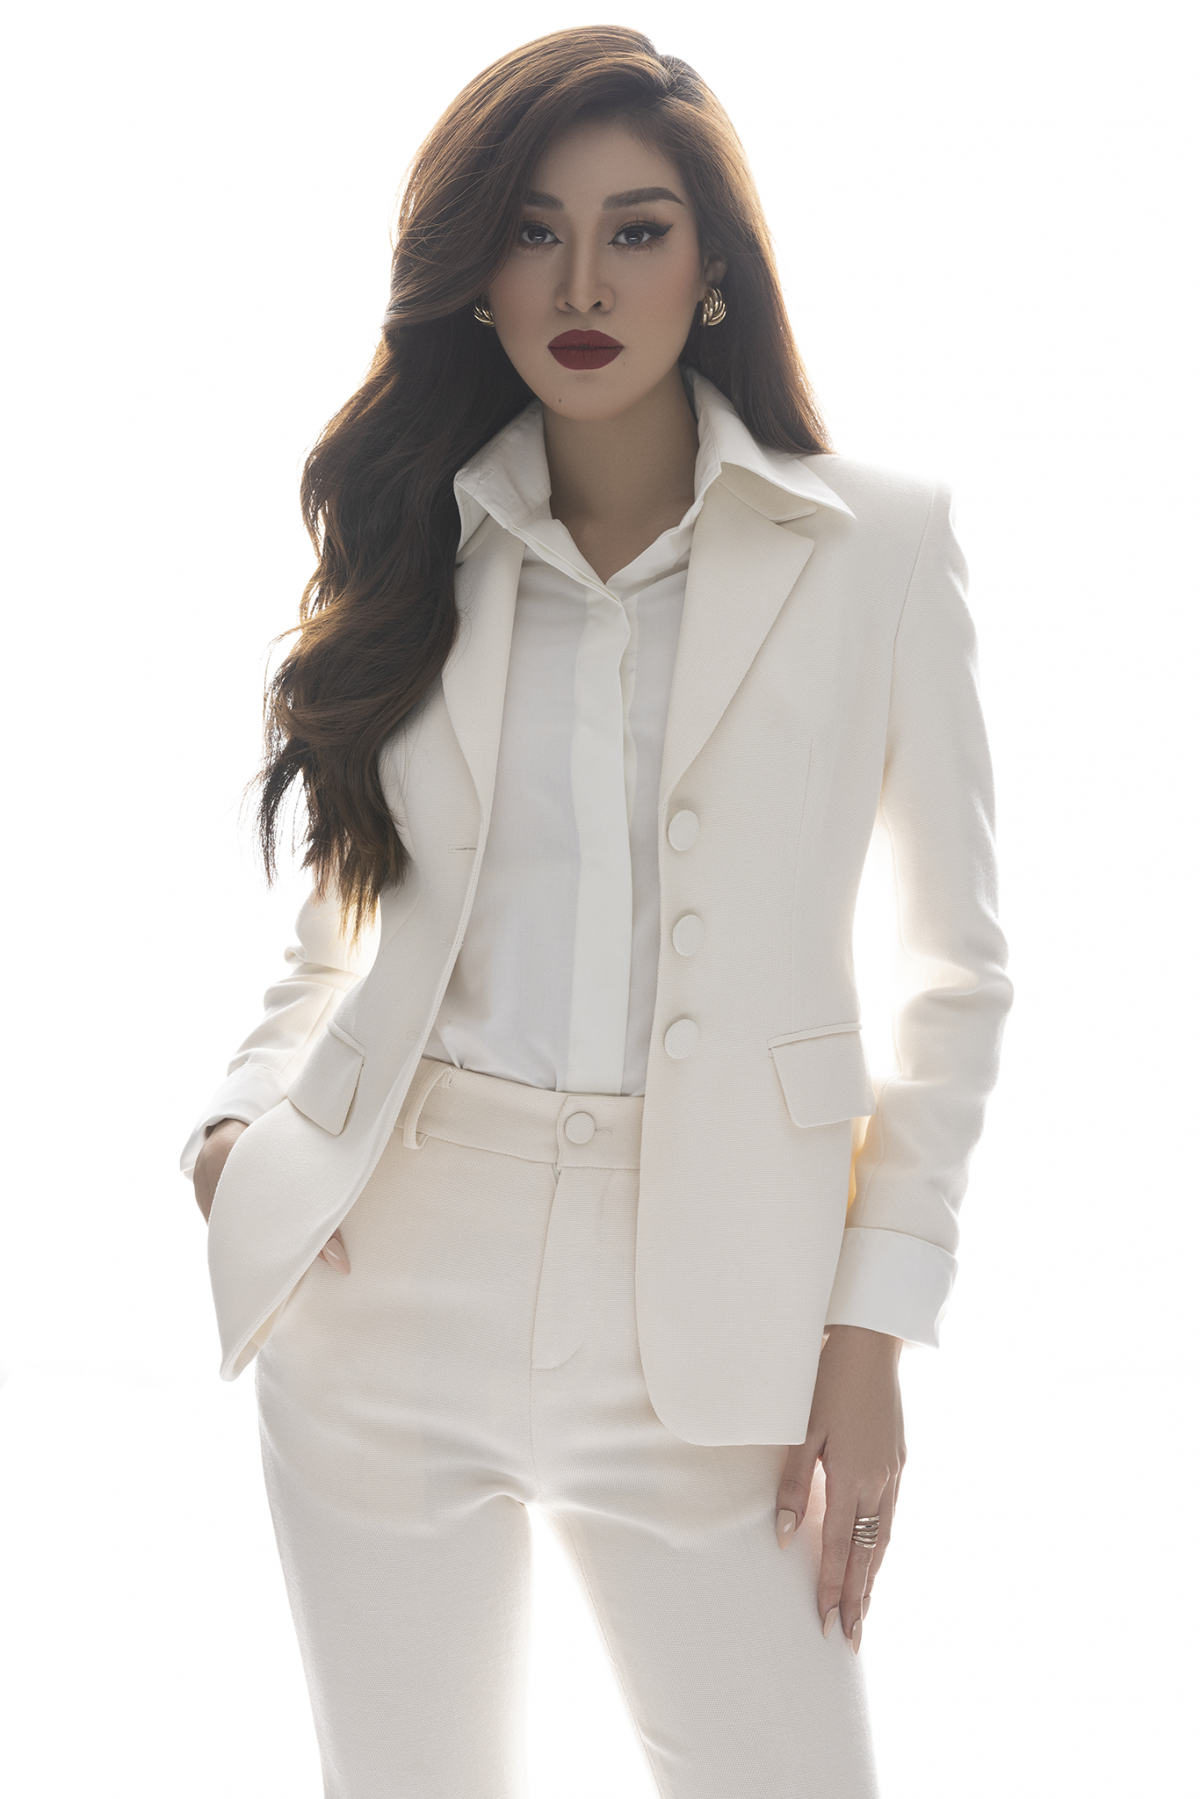 Hoa hậu Khánh Vân xây dựng hình ảnh nữ doanh nhân - Ảnh 10.